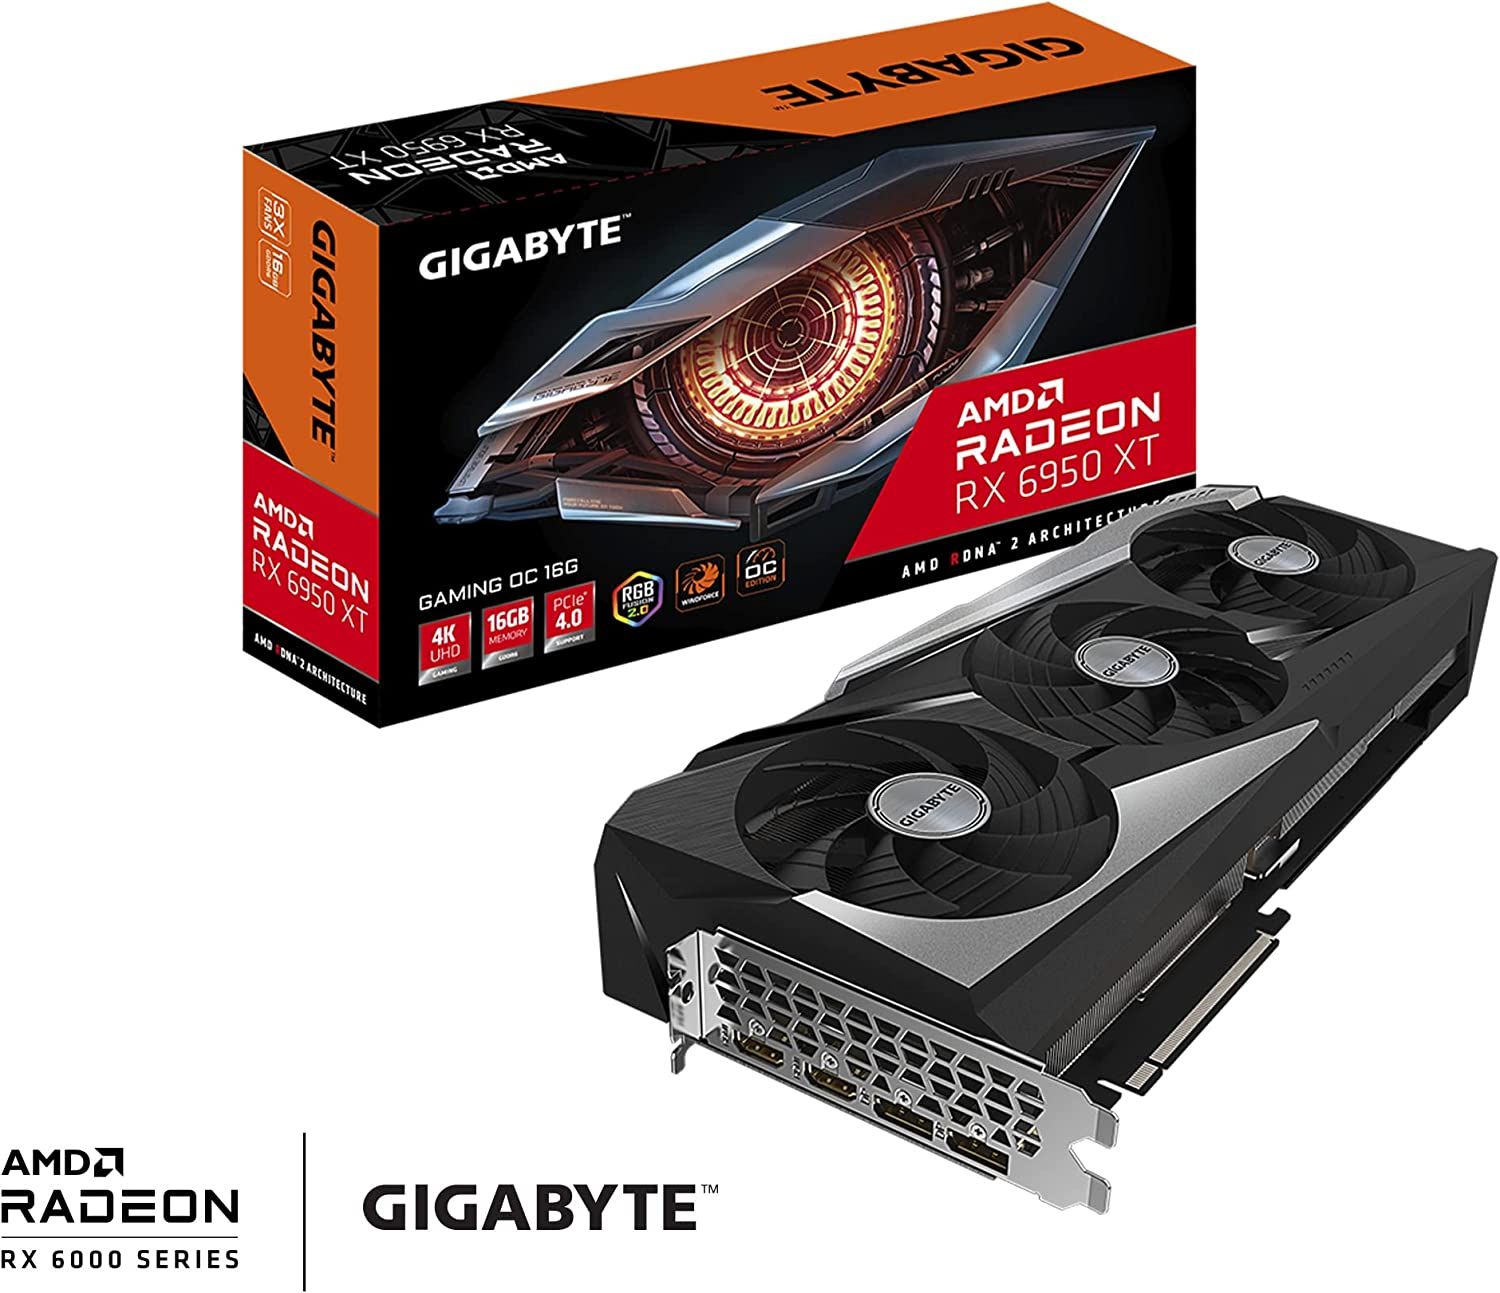 GIGABYTE Radeon RX 6950 XT PBI